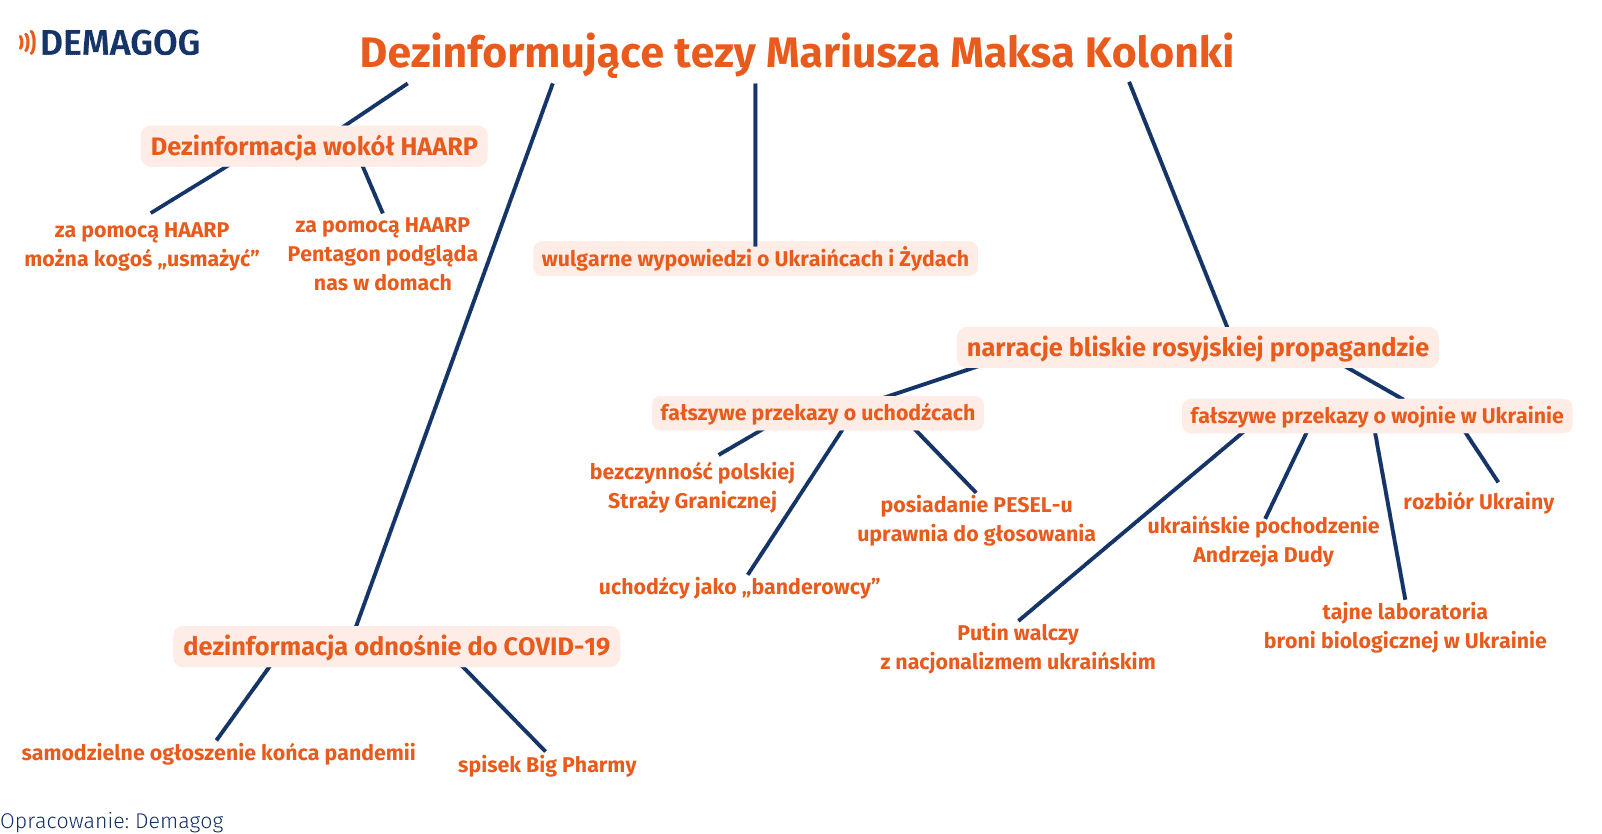 Grafika przedstawiająca dezinformujące tezy Mariusz Maksa Kolonki.